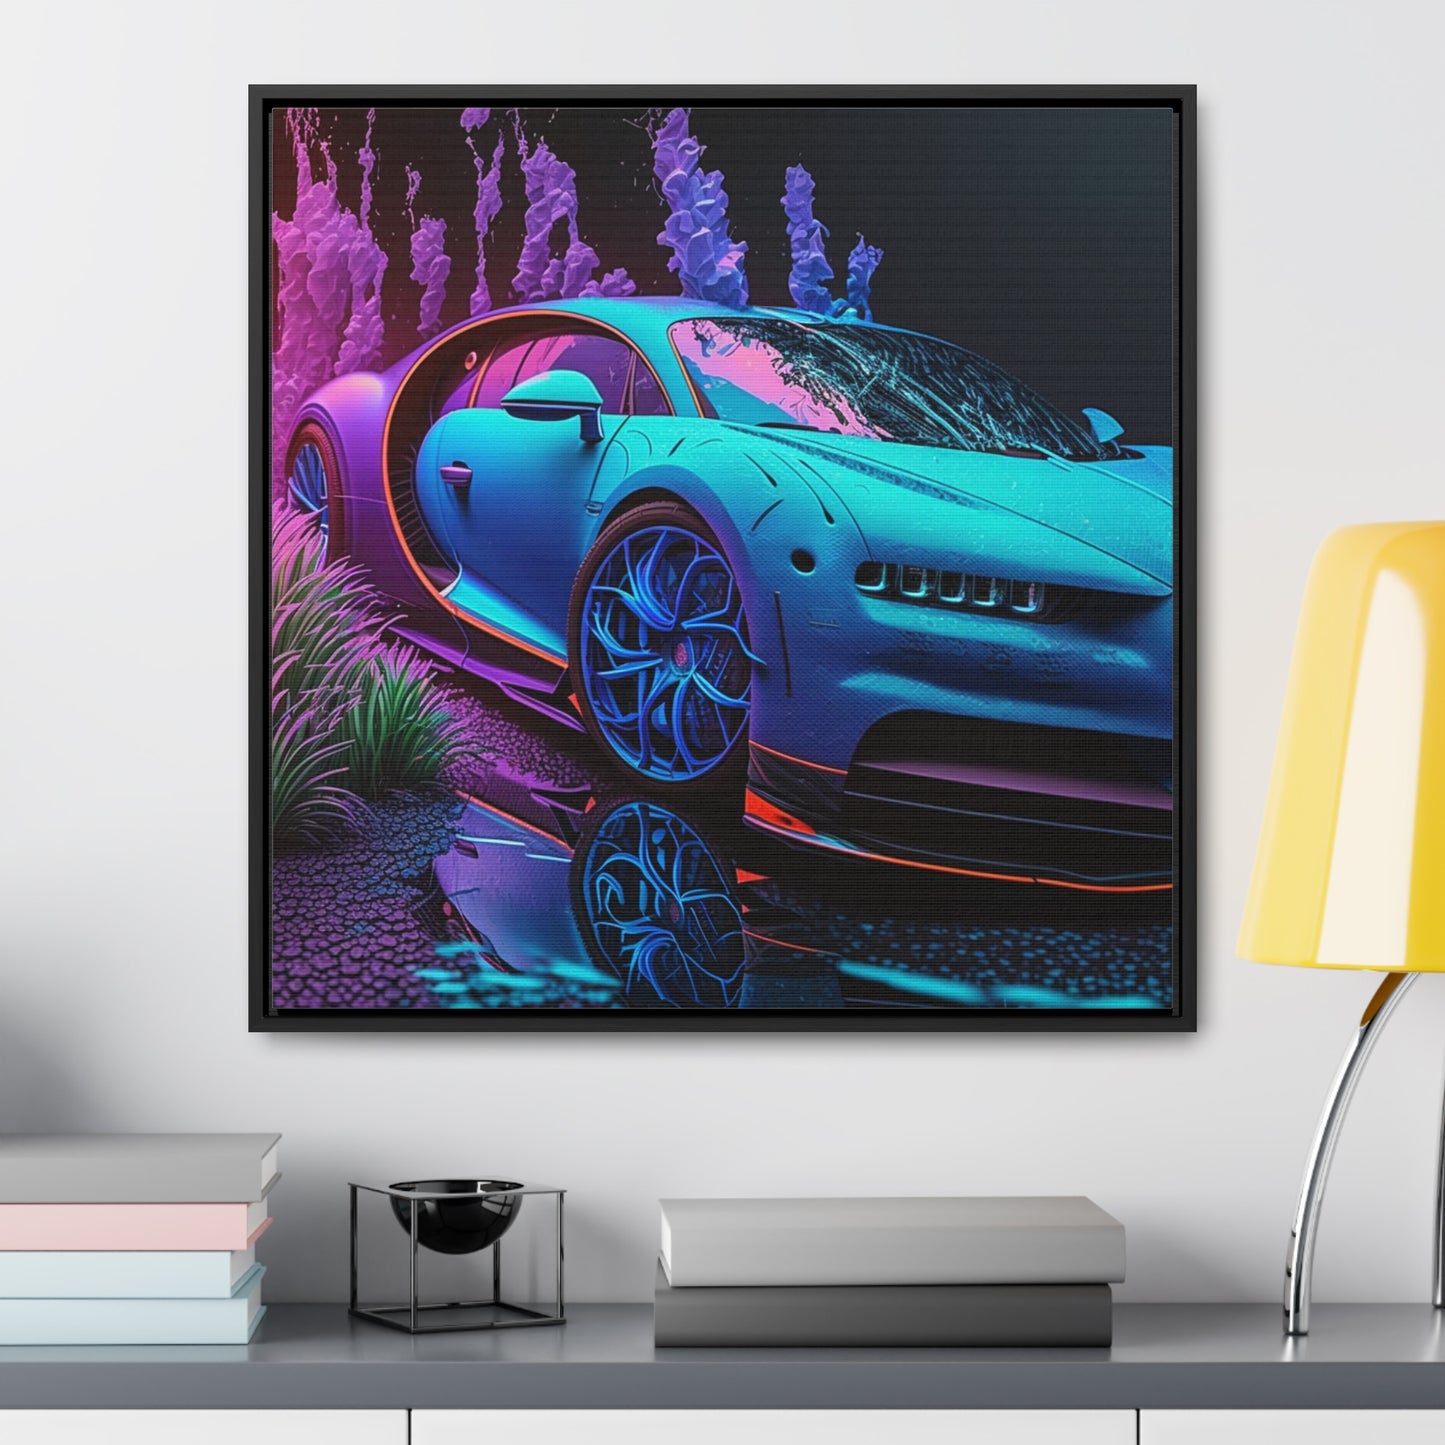 Gallery Canvas Wraps, Square Frame Bugatti Neon Chiron 2